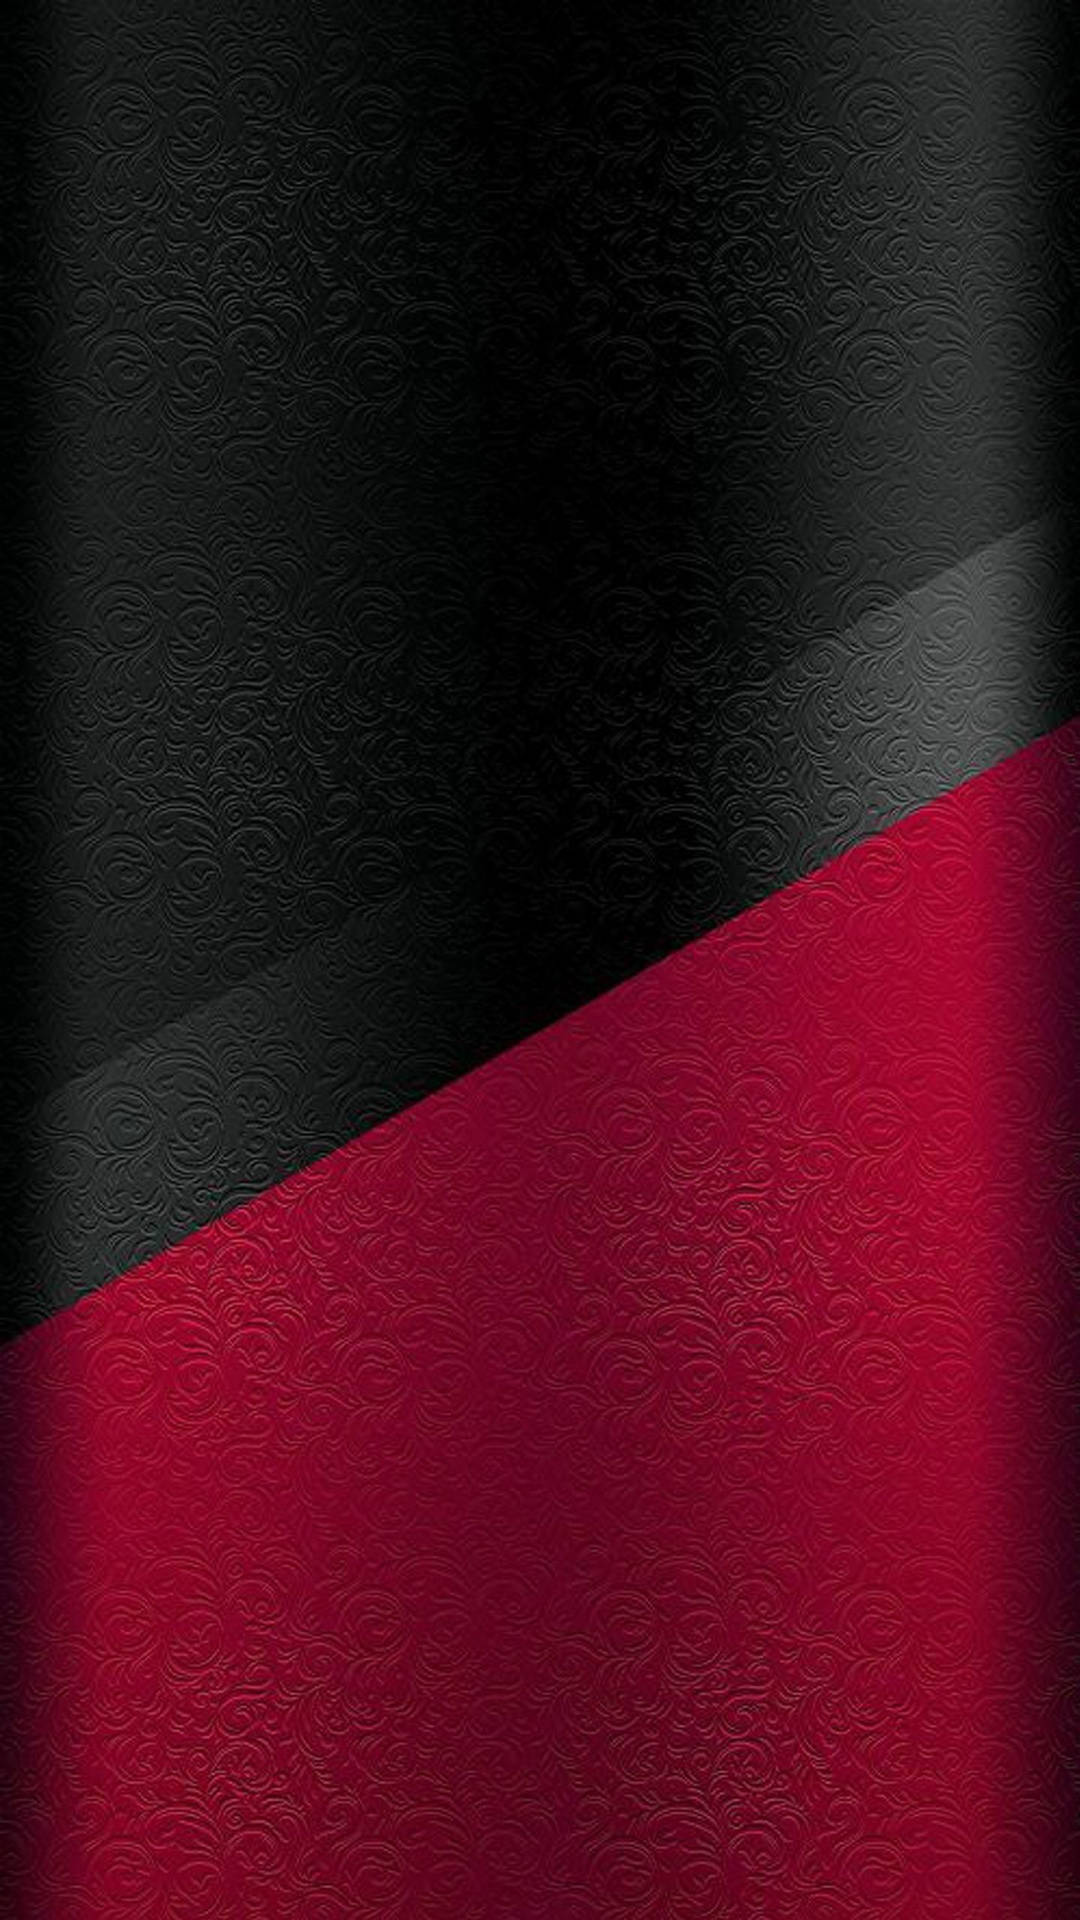 Sfondoper Iphone Con Una Sorprendente Texture In Pelle Nera E Rossa Sfondo